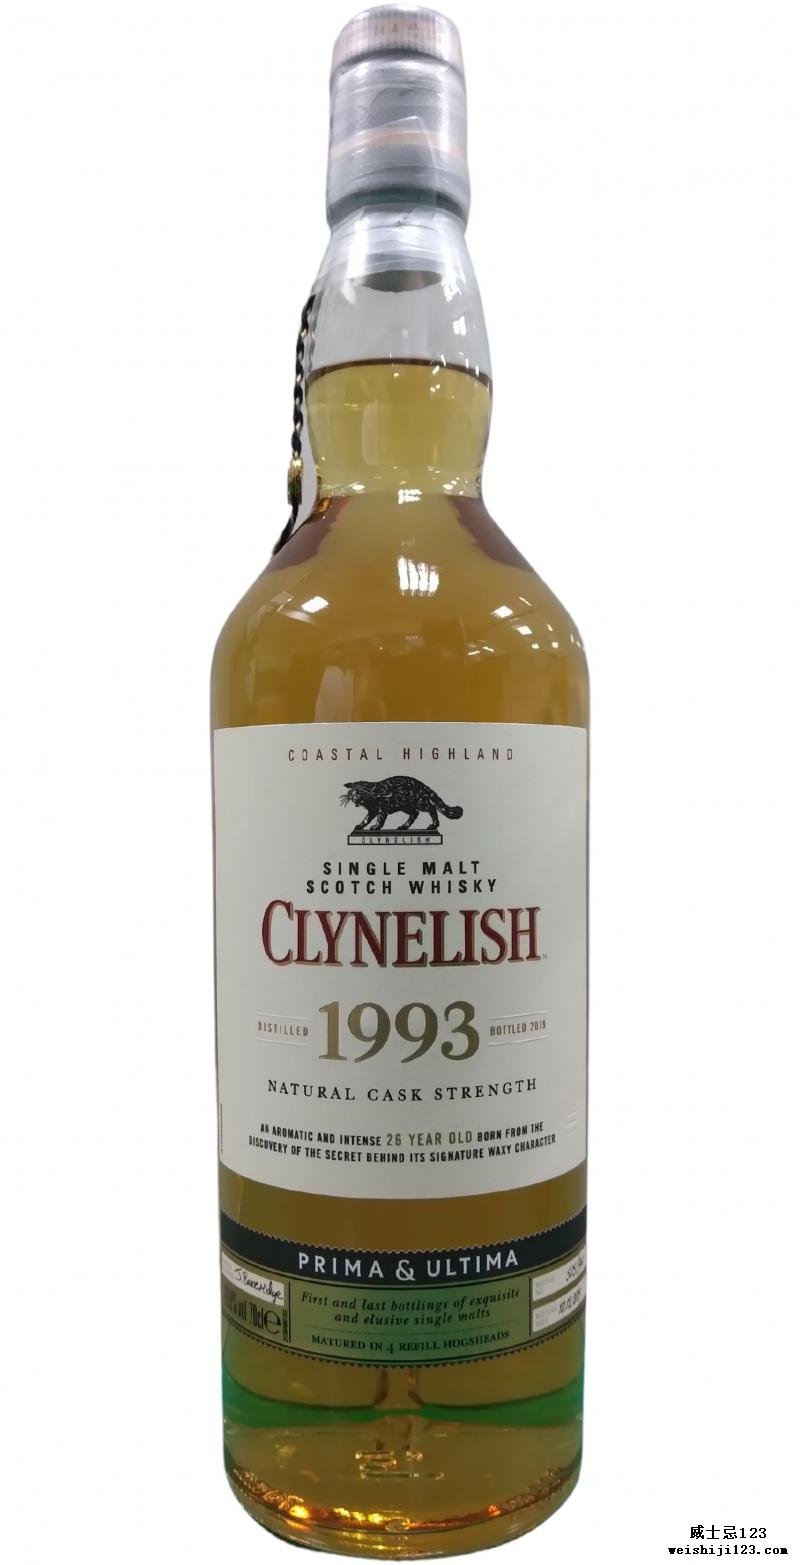 Clynelish 1993